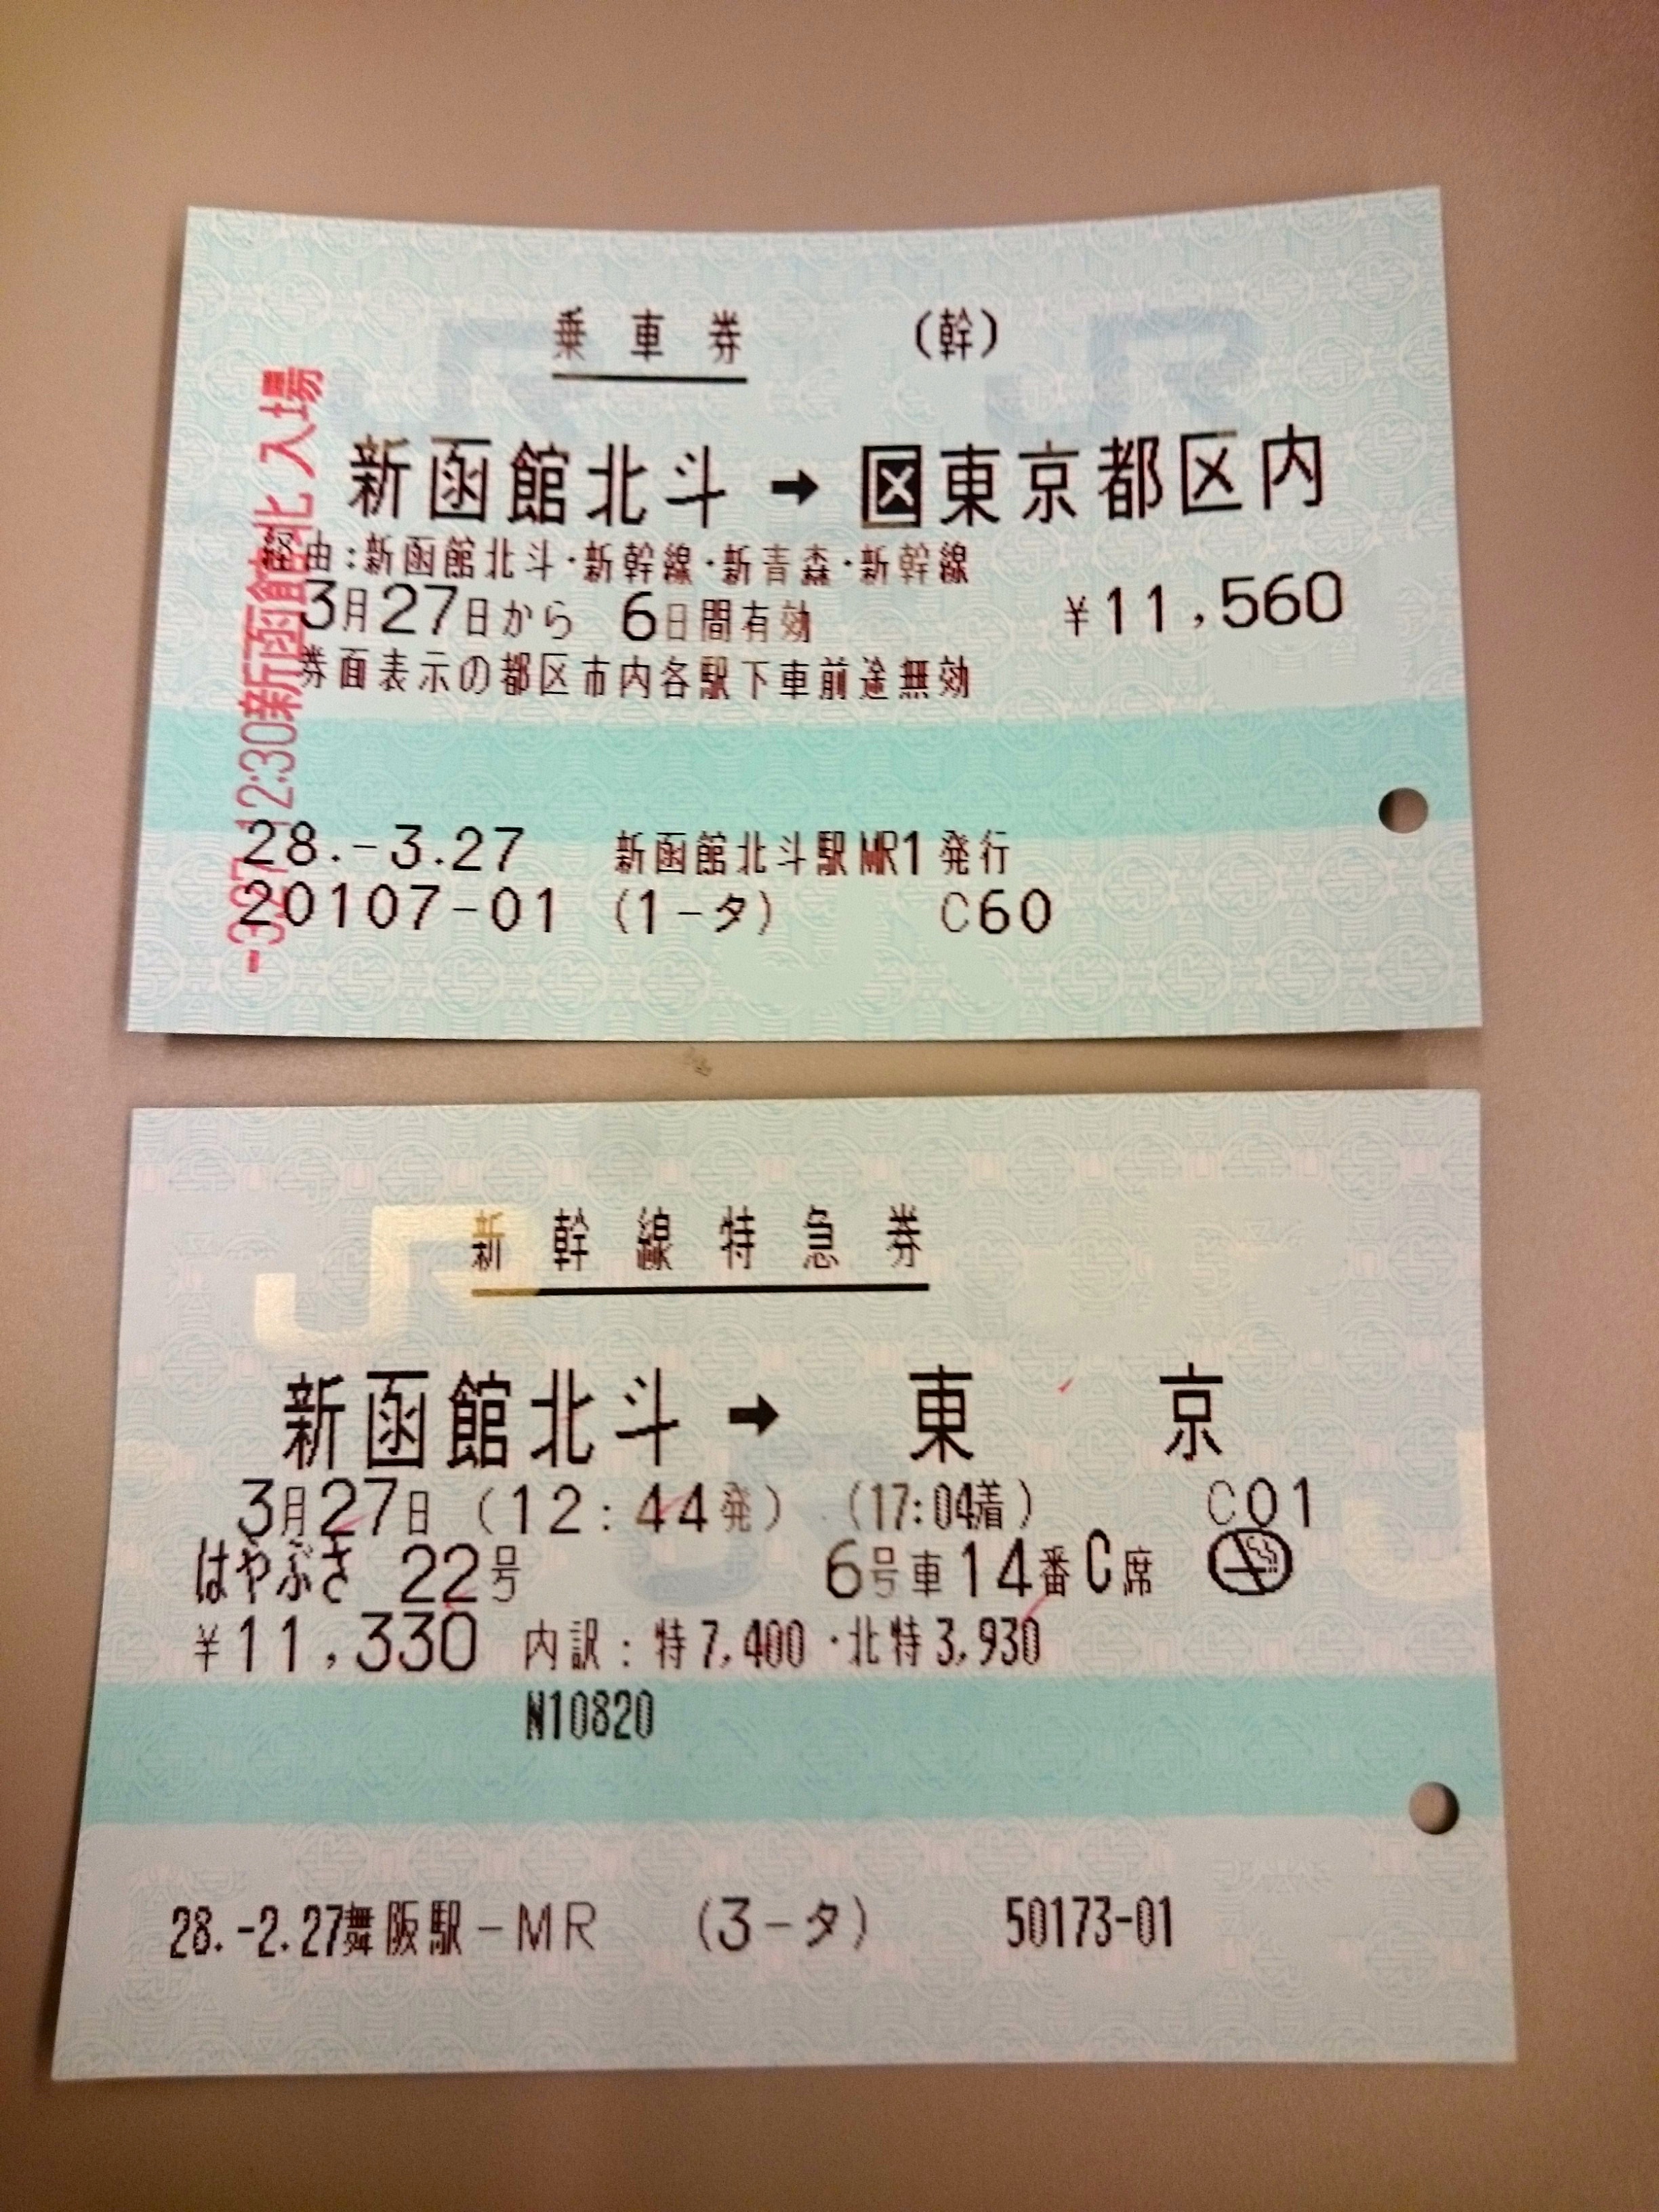 新幹線について -新幹線に関してですが、改札で2枚切符を入れますが、- 新幹線 | 教えて!goo